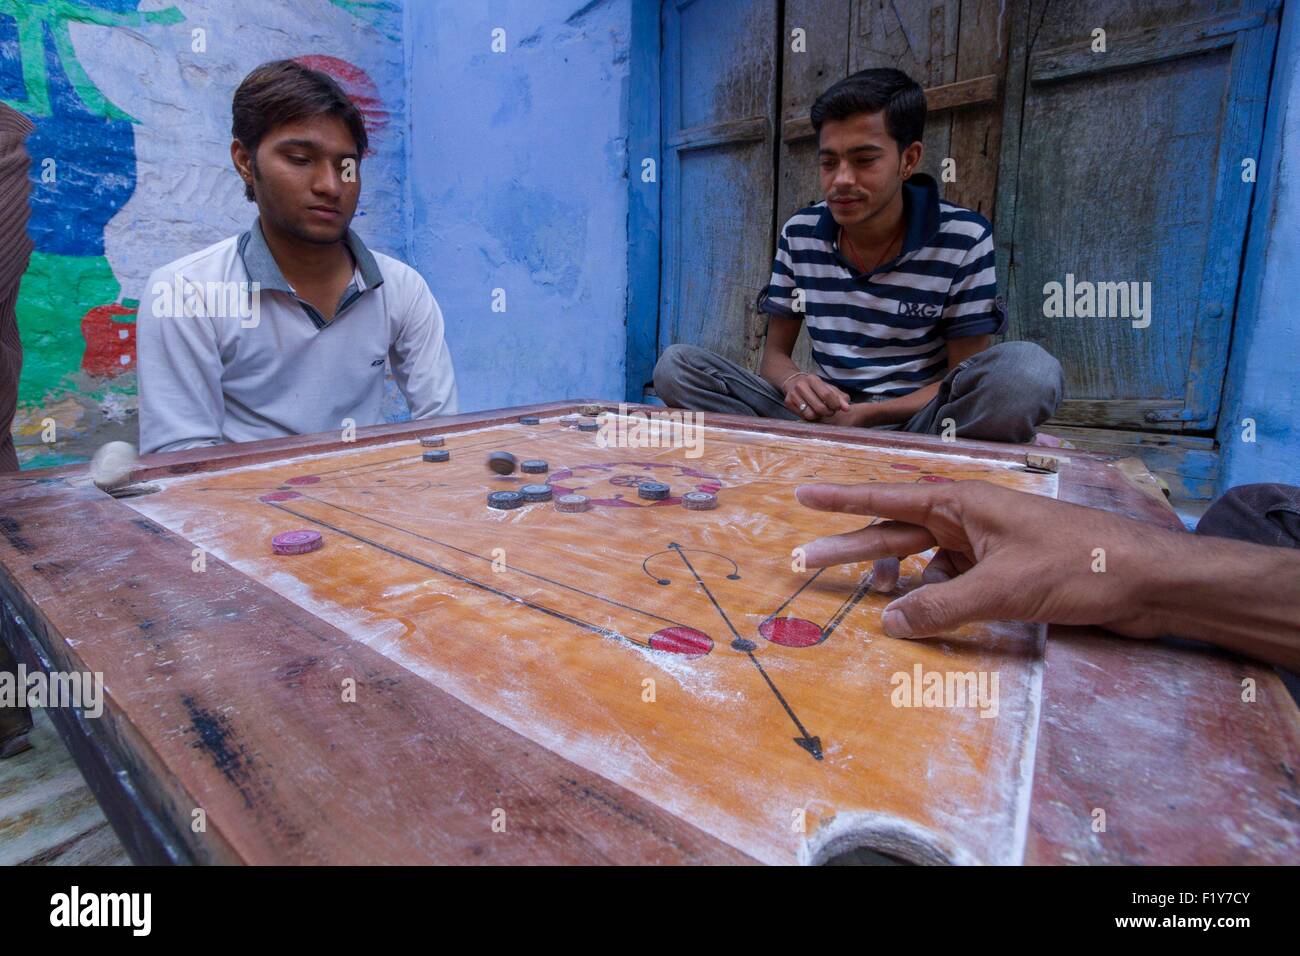 Indien, Rajasthan State, Jodhpur, die blaue Stadt Männer spielen Carrom (indisches Billard) Stockfoto